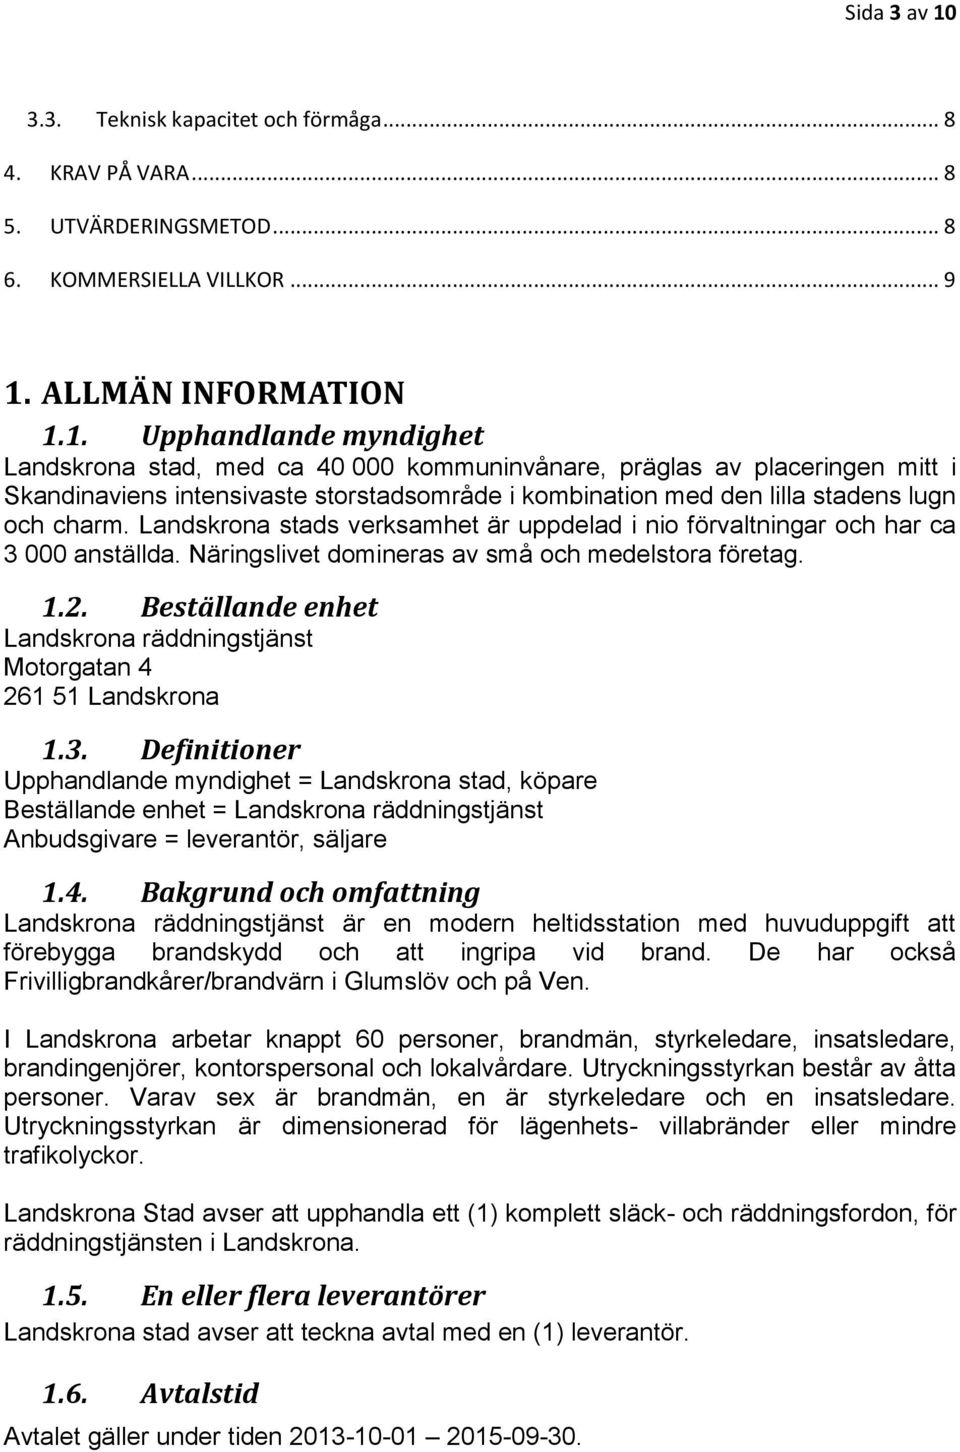 ALLMÄN INFORMATION 1.